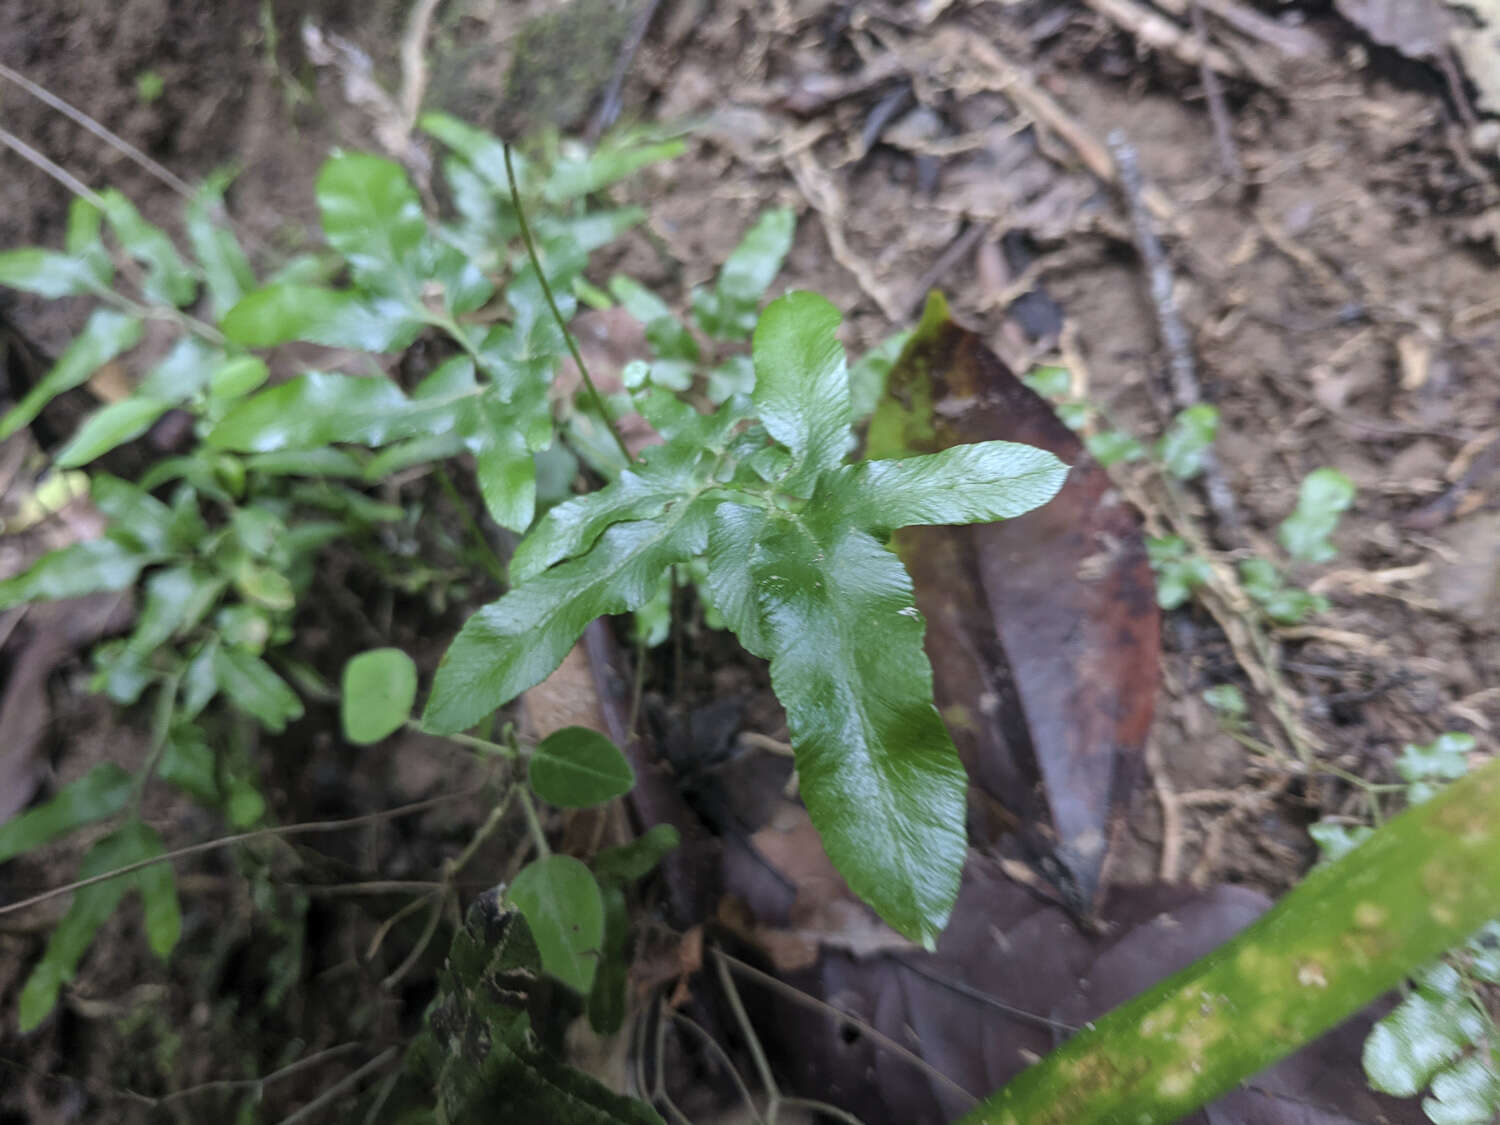 Image of Lygodium cubense Kunth